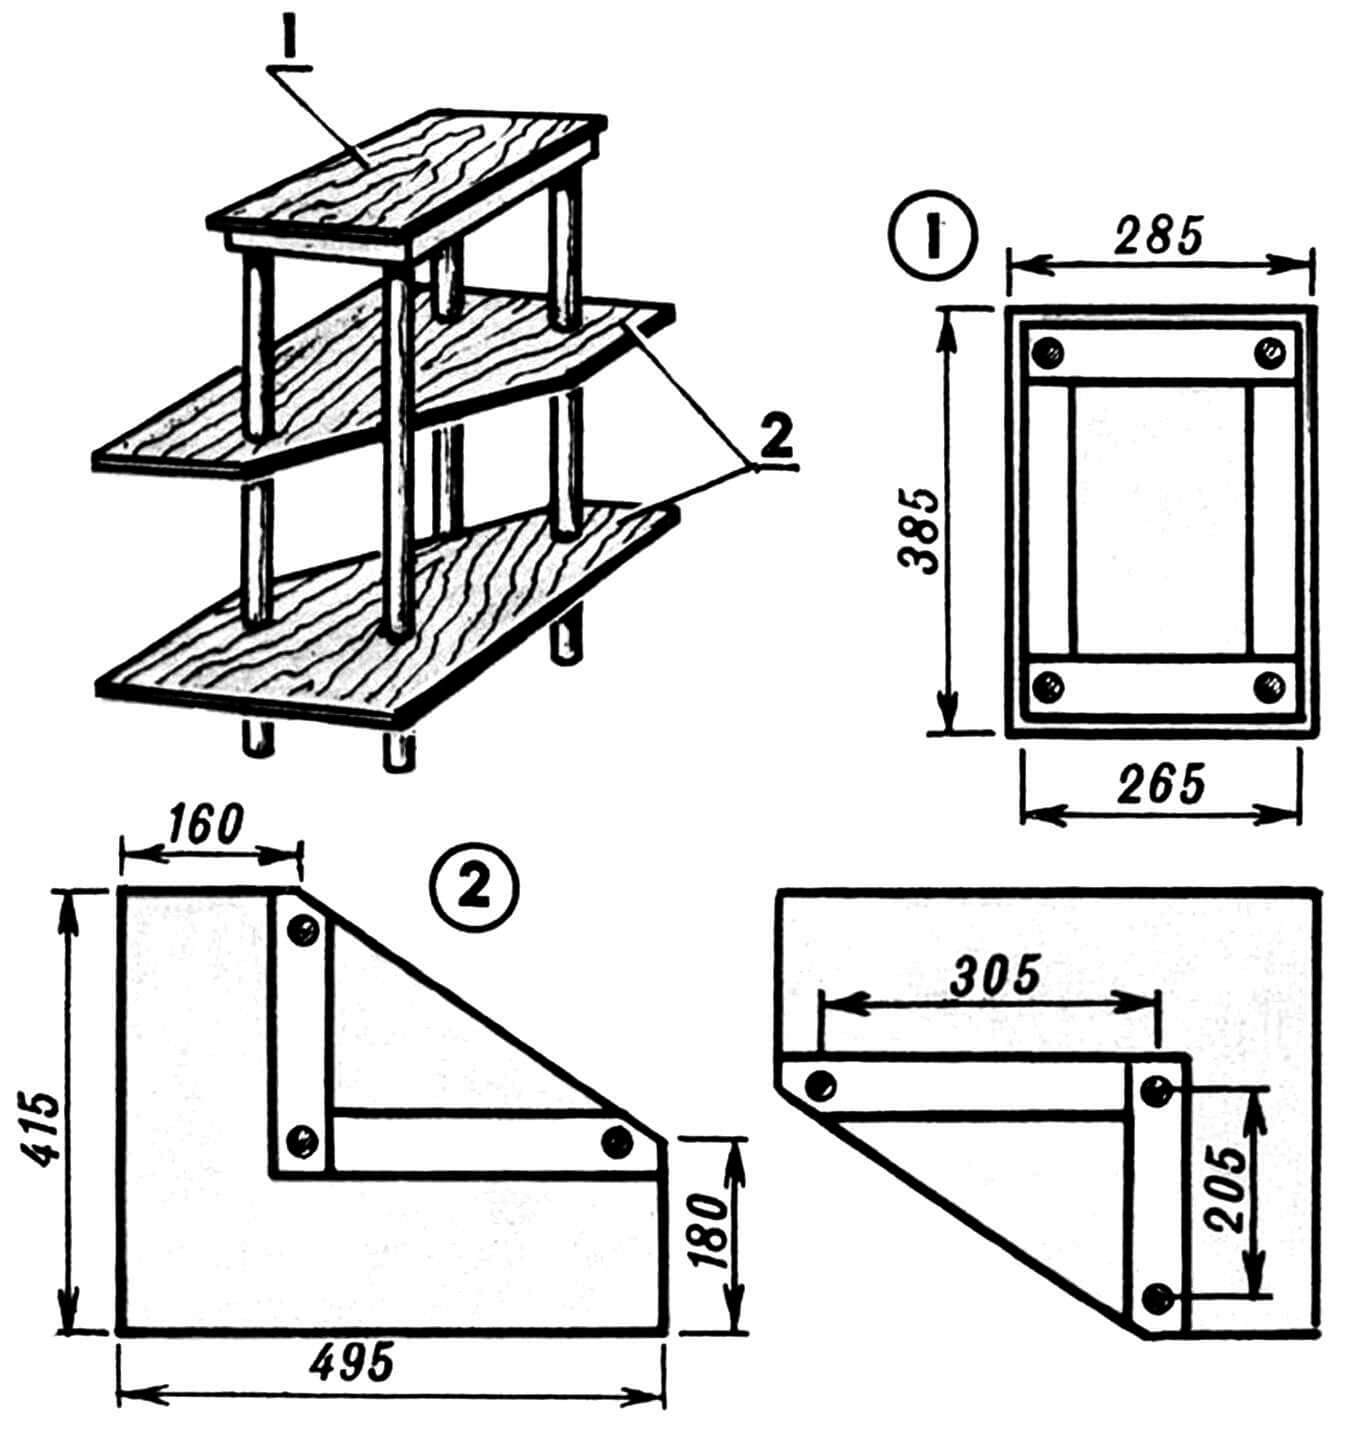 Г орка и ее детали: 1 — рамка в сборе с верхней панелью; 2 — полки.